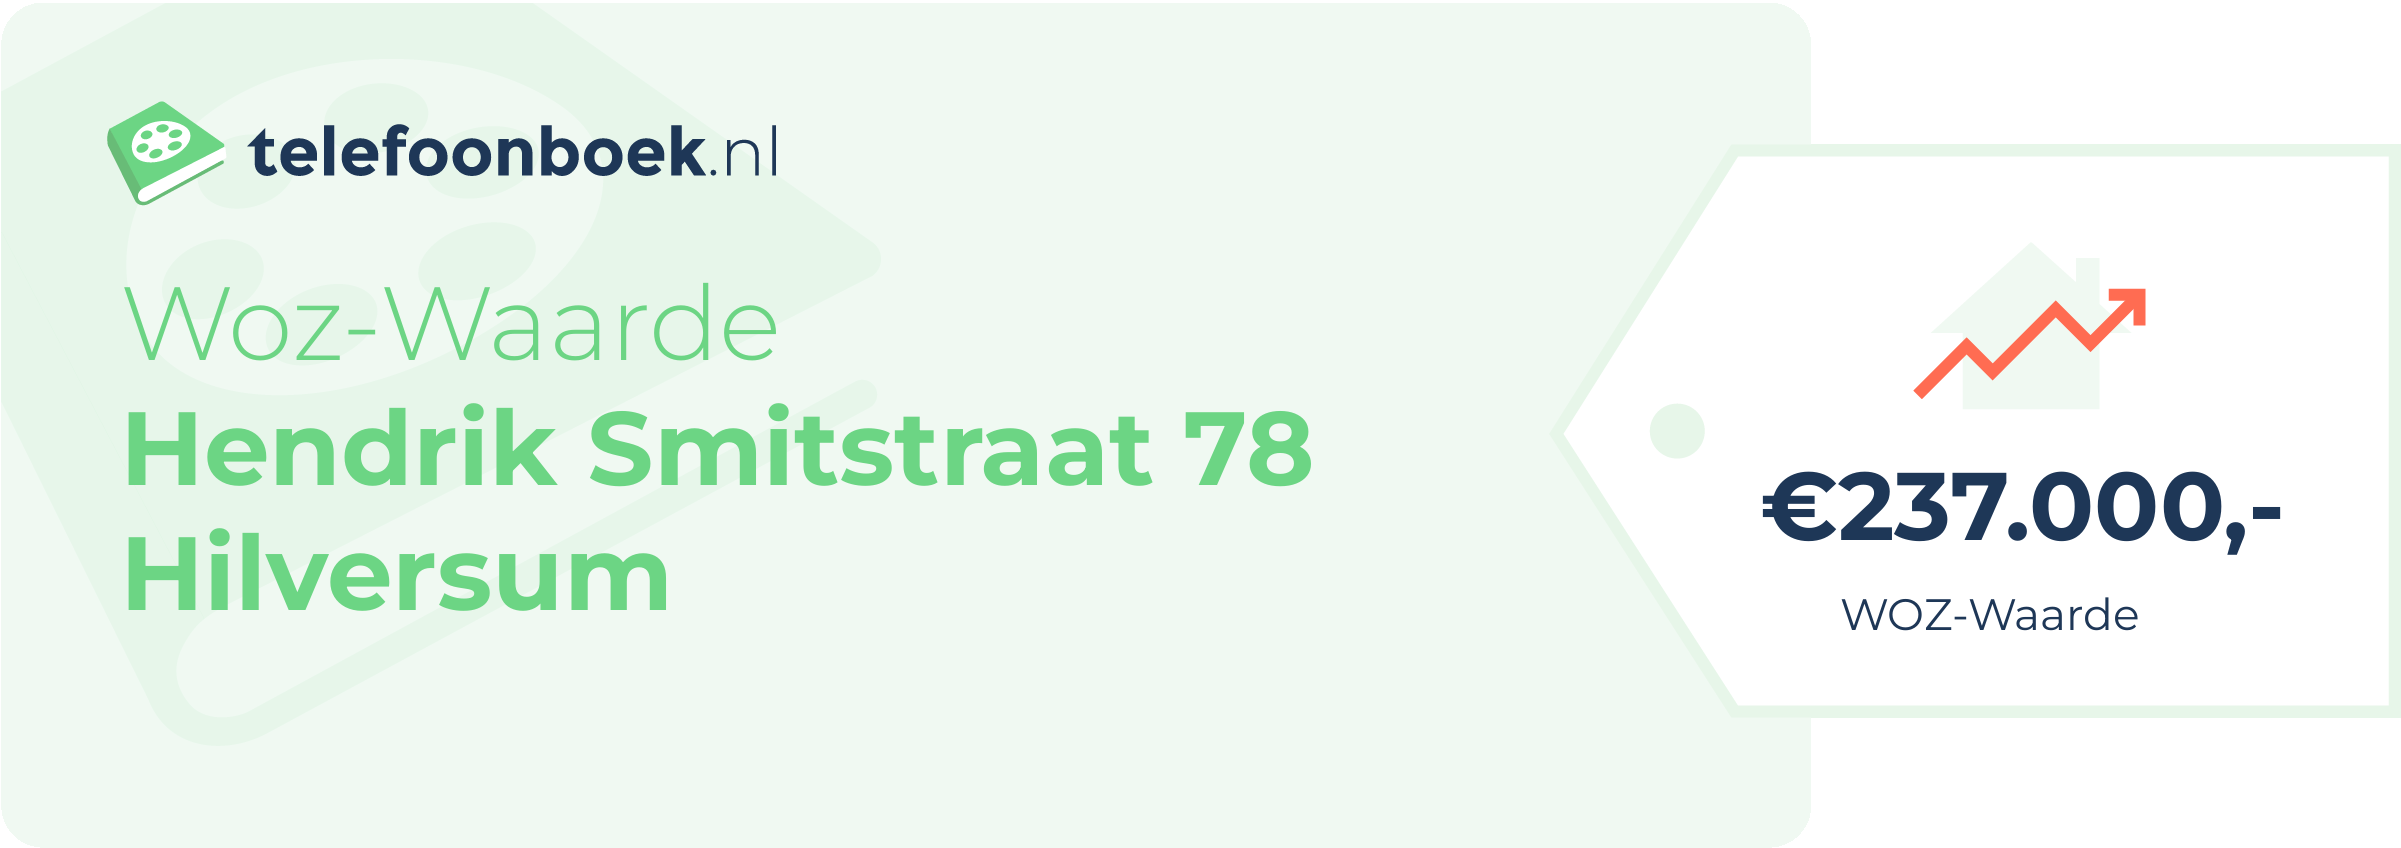 WOZ-waarde Hendrik Smitstraat 78 Hilversum